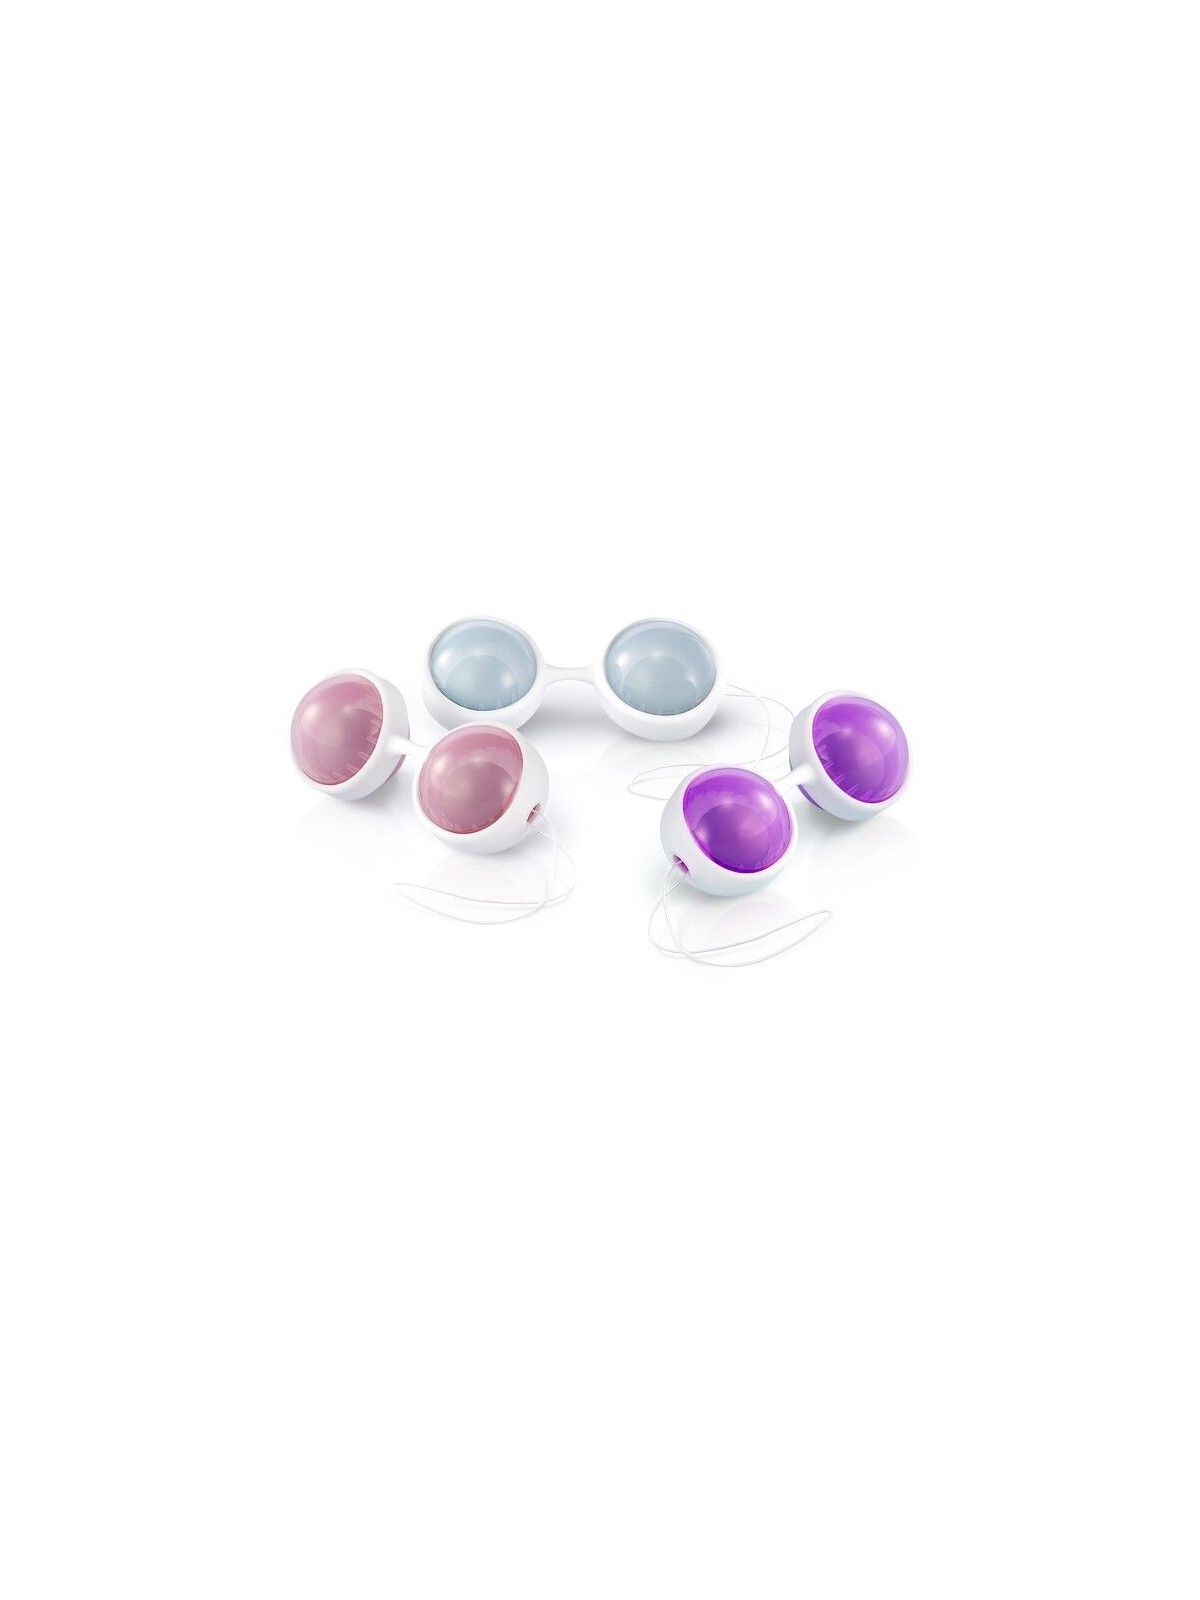 Lelo Luna Beads Plus Set De Placer - Comprar Bolas chinas Lelo - Bolas chinas (1)